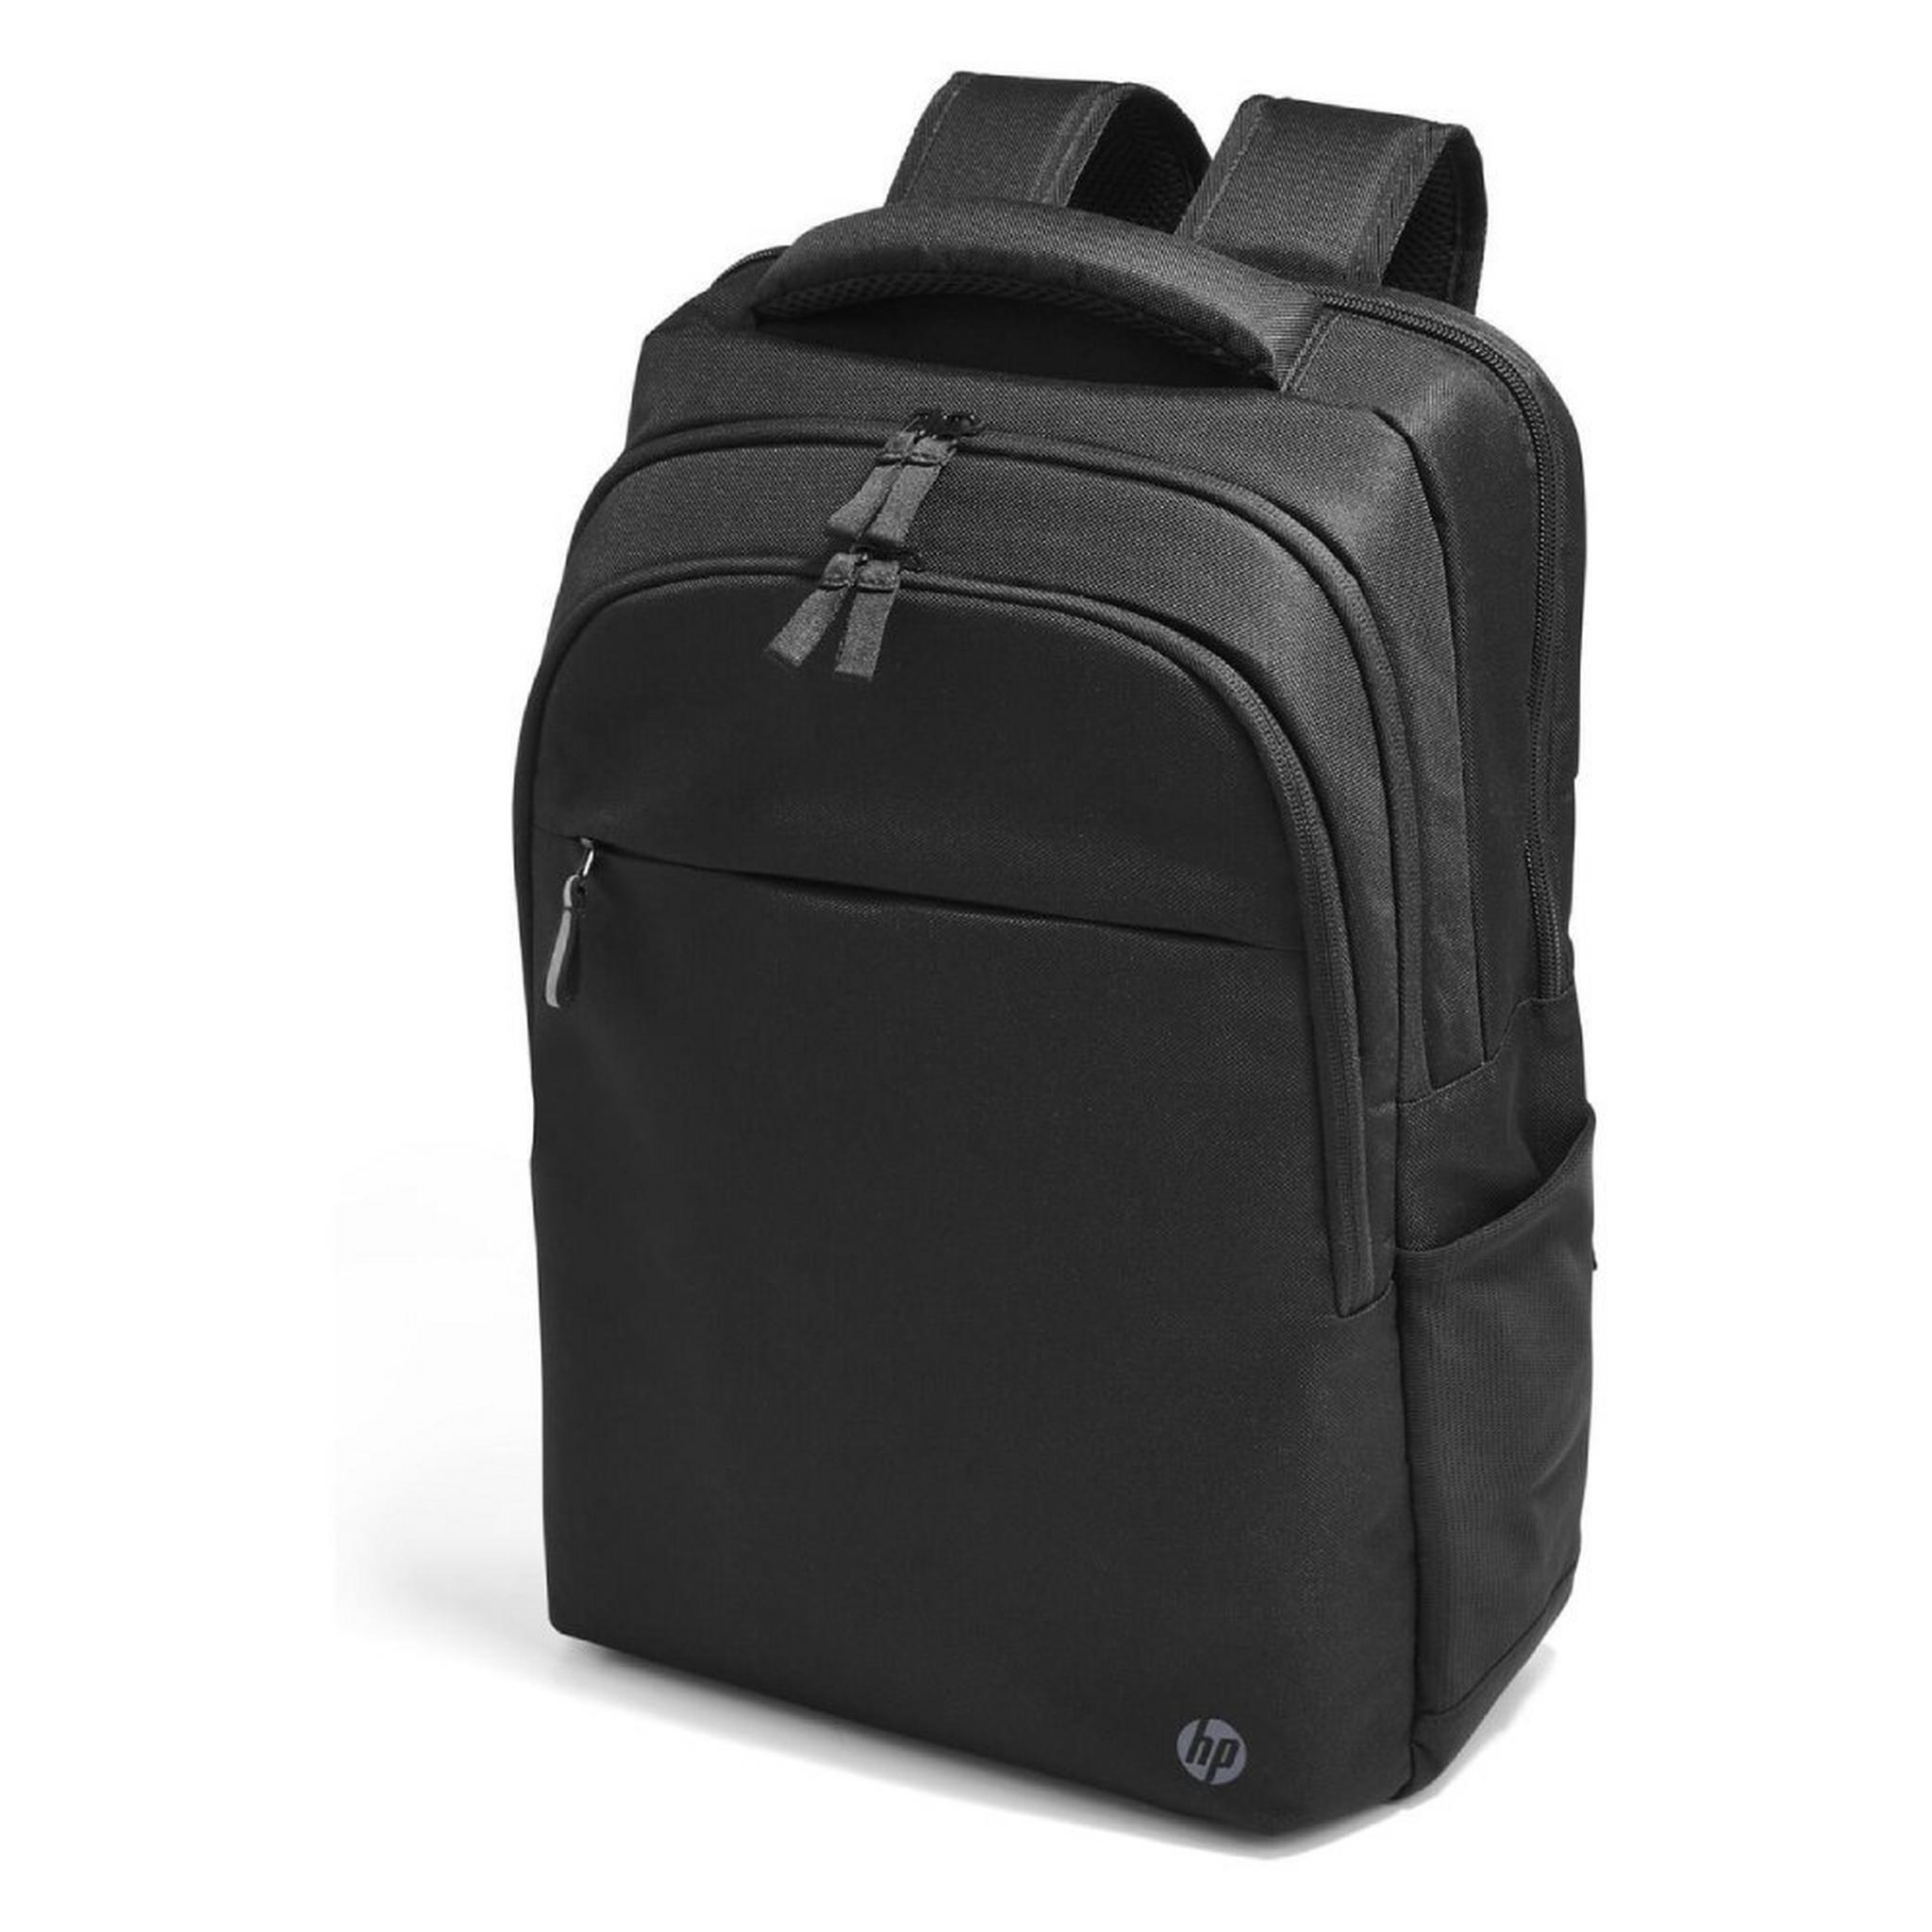 حقيبة ظهر HP بروفيشيونال للابتوب مقاس 17.3 بوصة - أسود